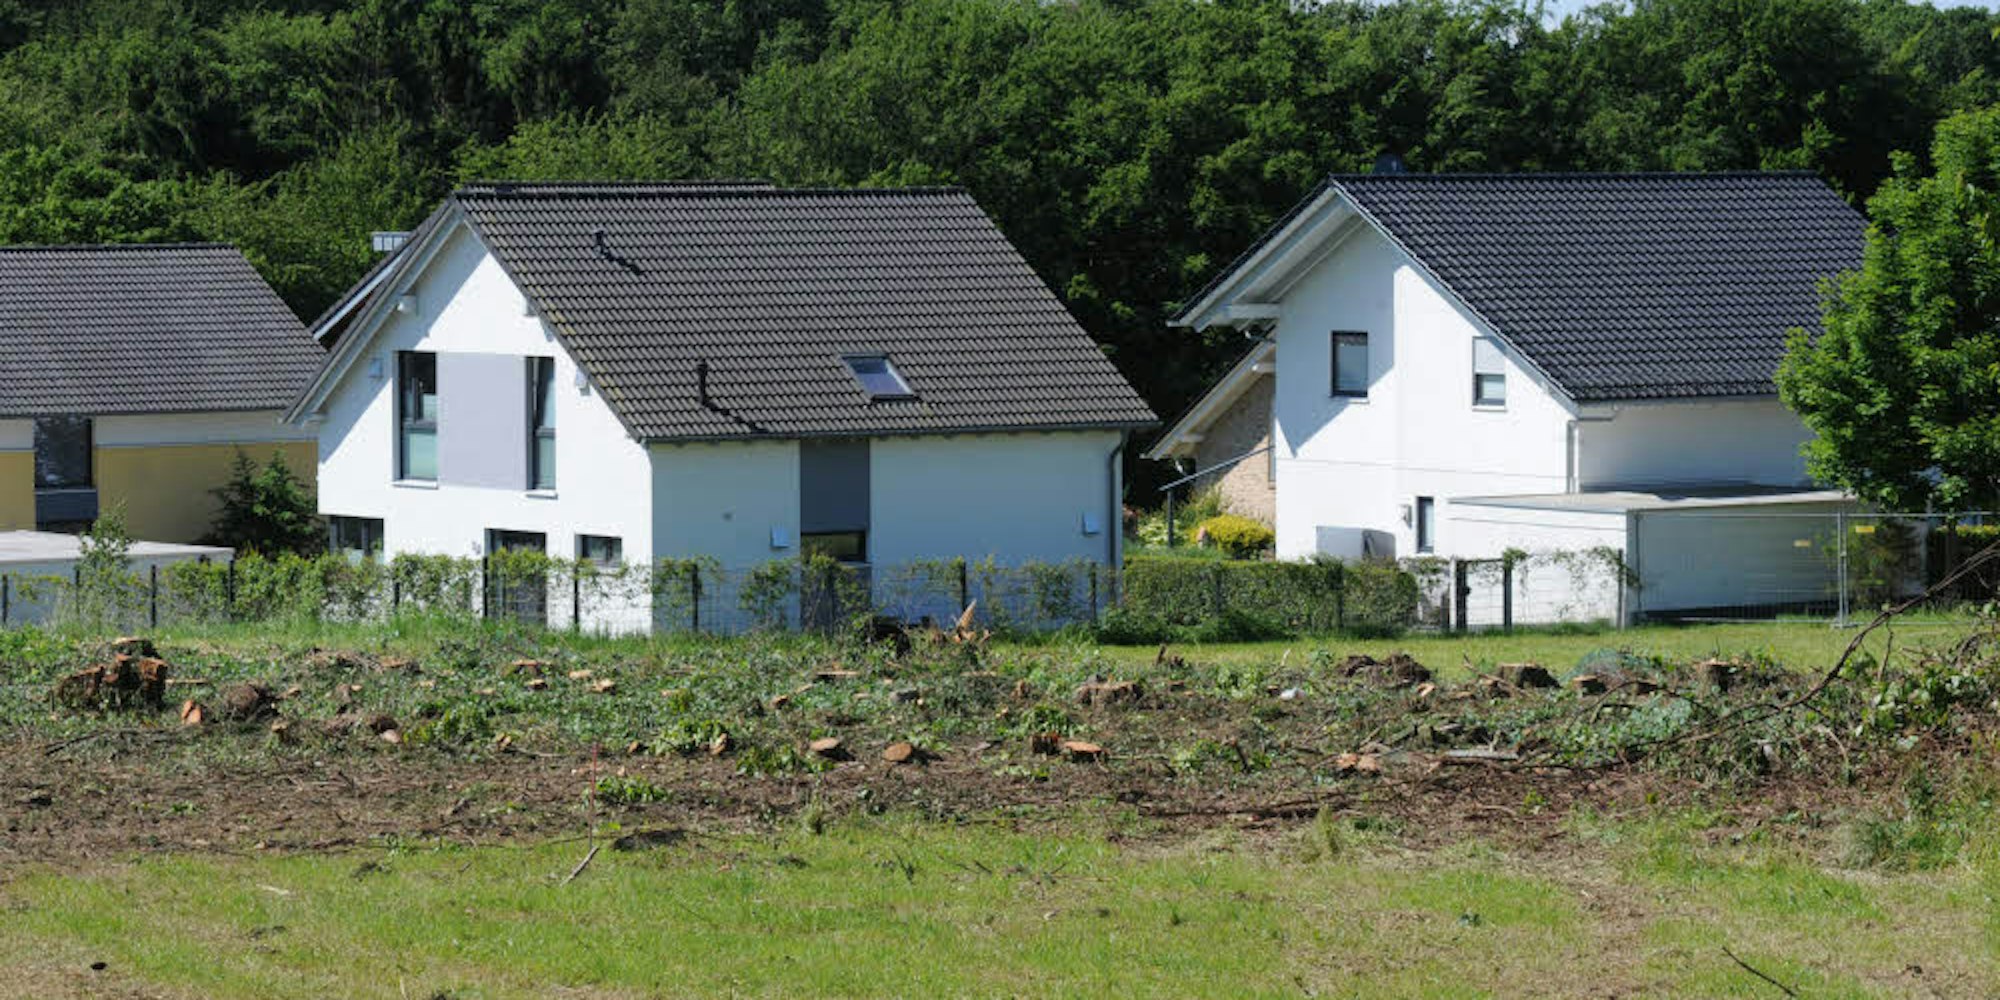 Die Häuser im Rötzinghofener Neubaugebiet waren bis vor kurzem durch ein schmales Wäldchen abgeschirmt.